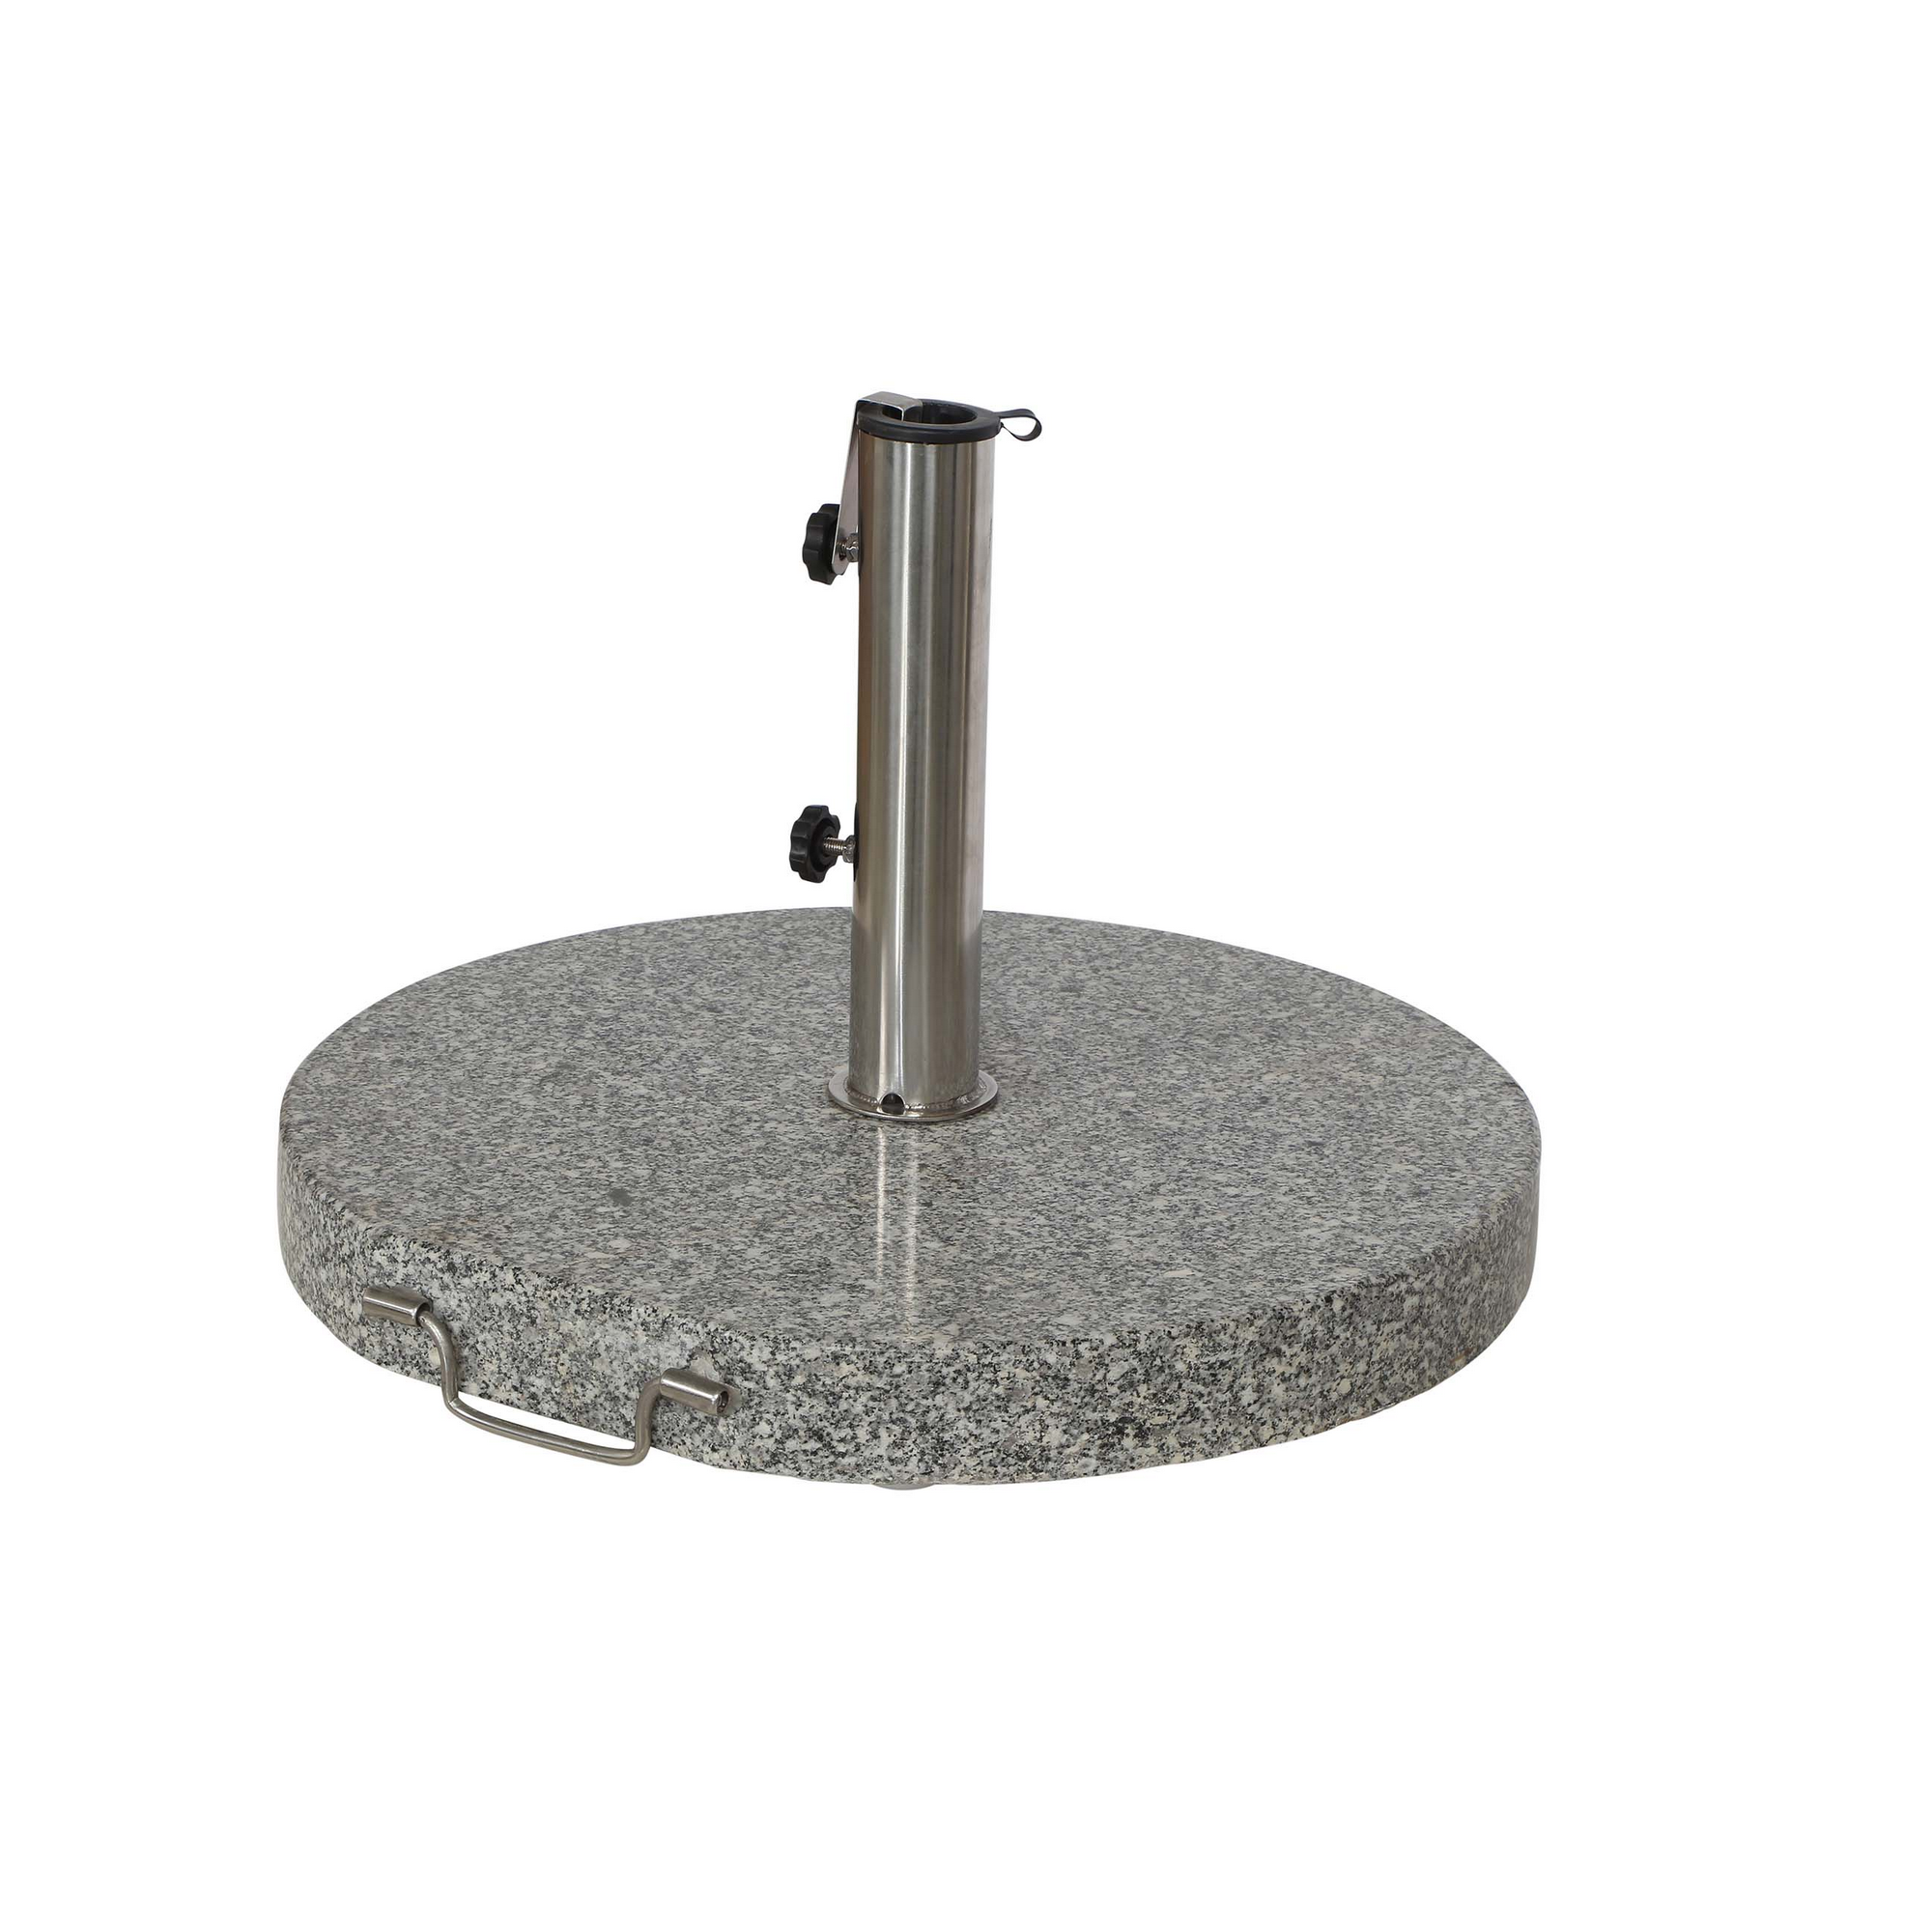 Sonnenschirmständer 'Granit' 40 kg für Schirmstöcke bis Ø 48 mm + product picture